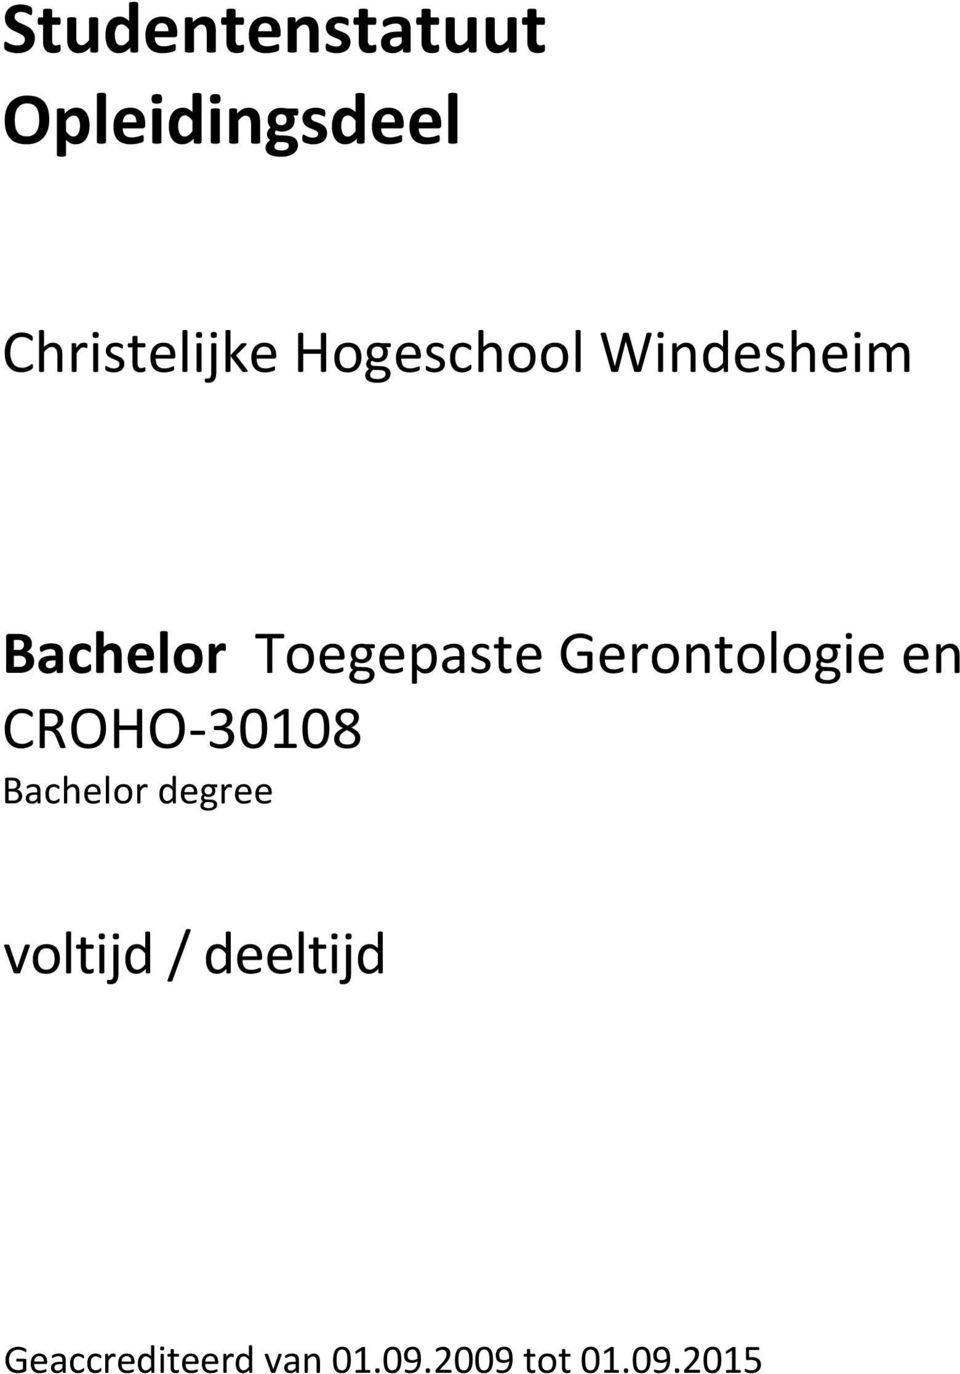 Gerontologie en CROHO-30108 Bachelor degree